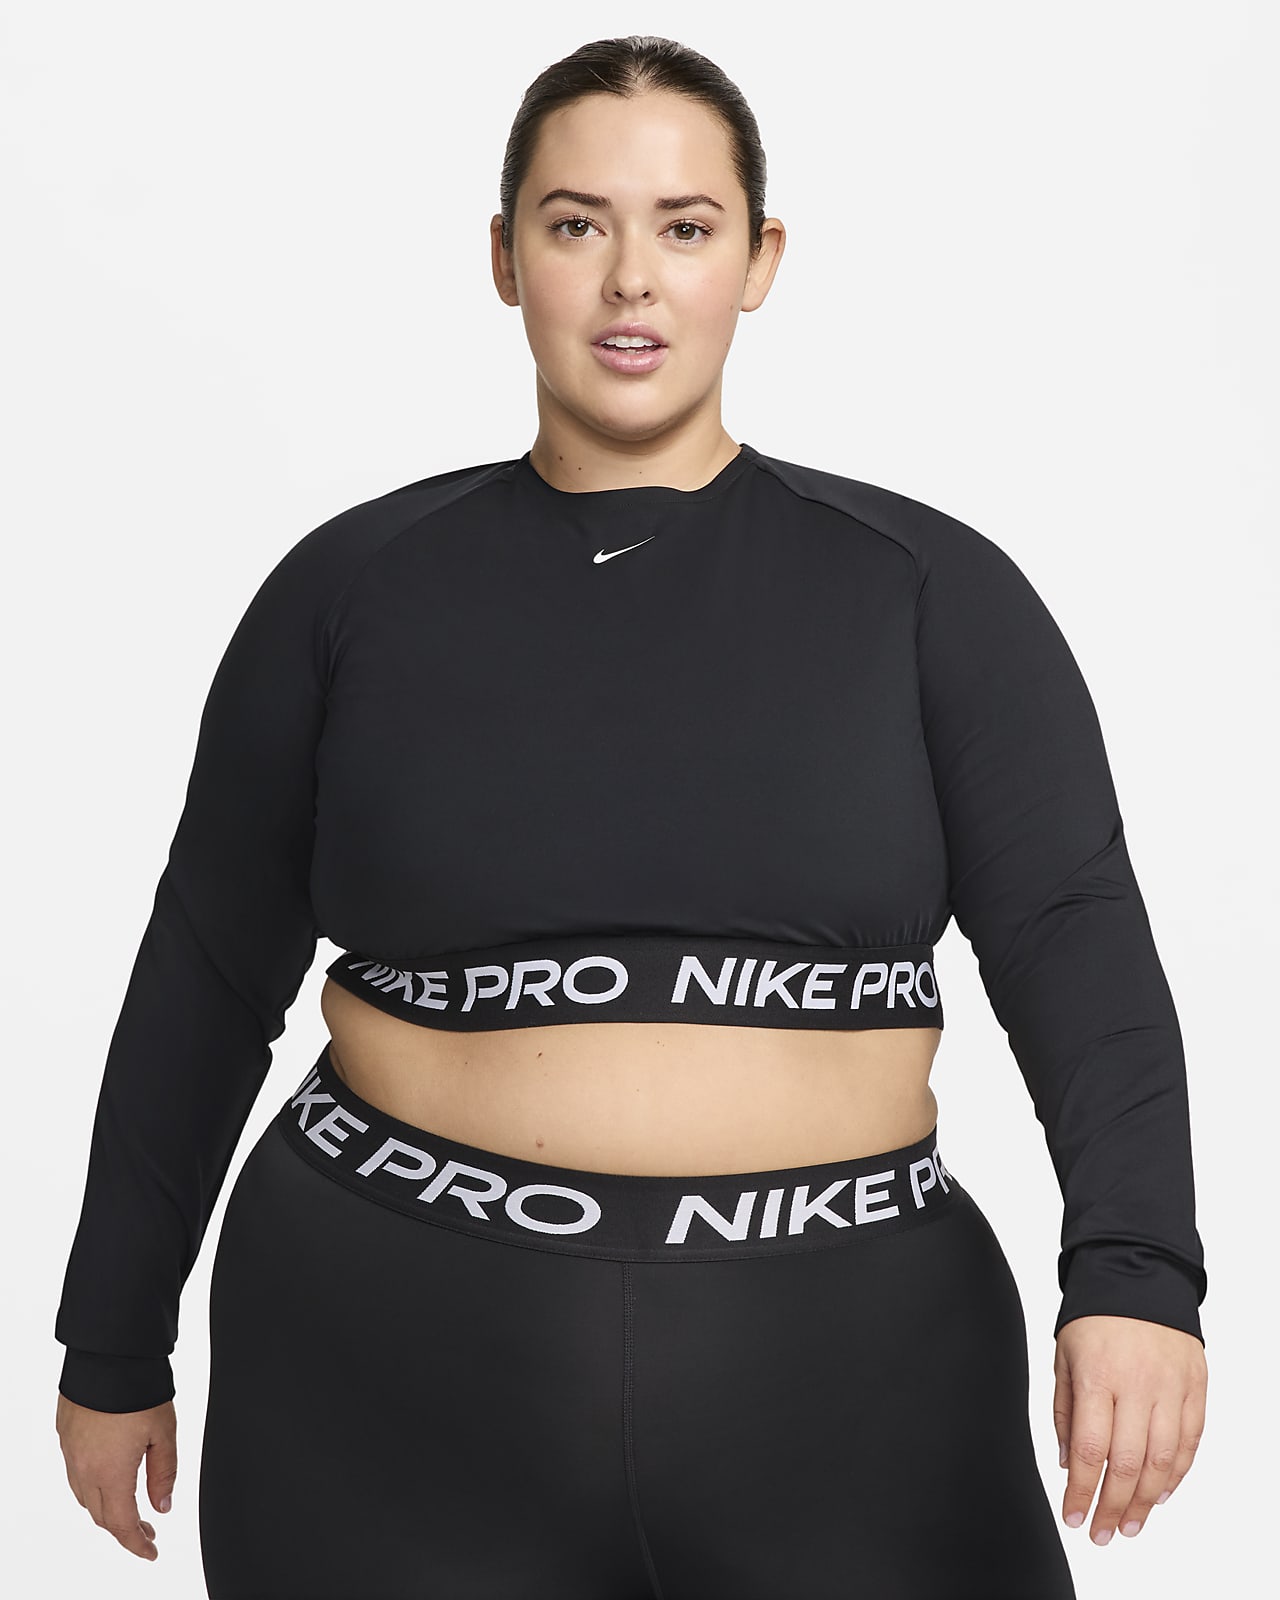 Dámské zkrácené tričko Nike Pro 365 Dri-FIT s dlouhým rukávem (větší velikost)